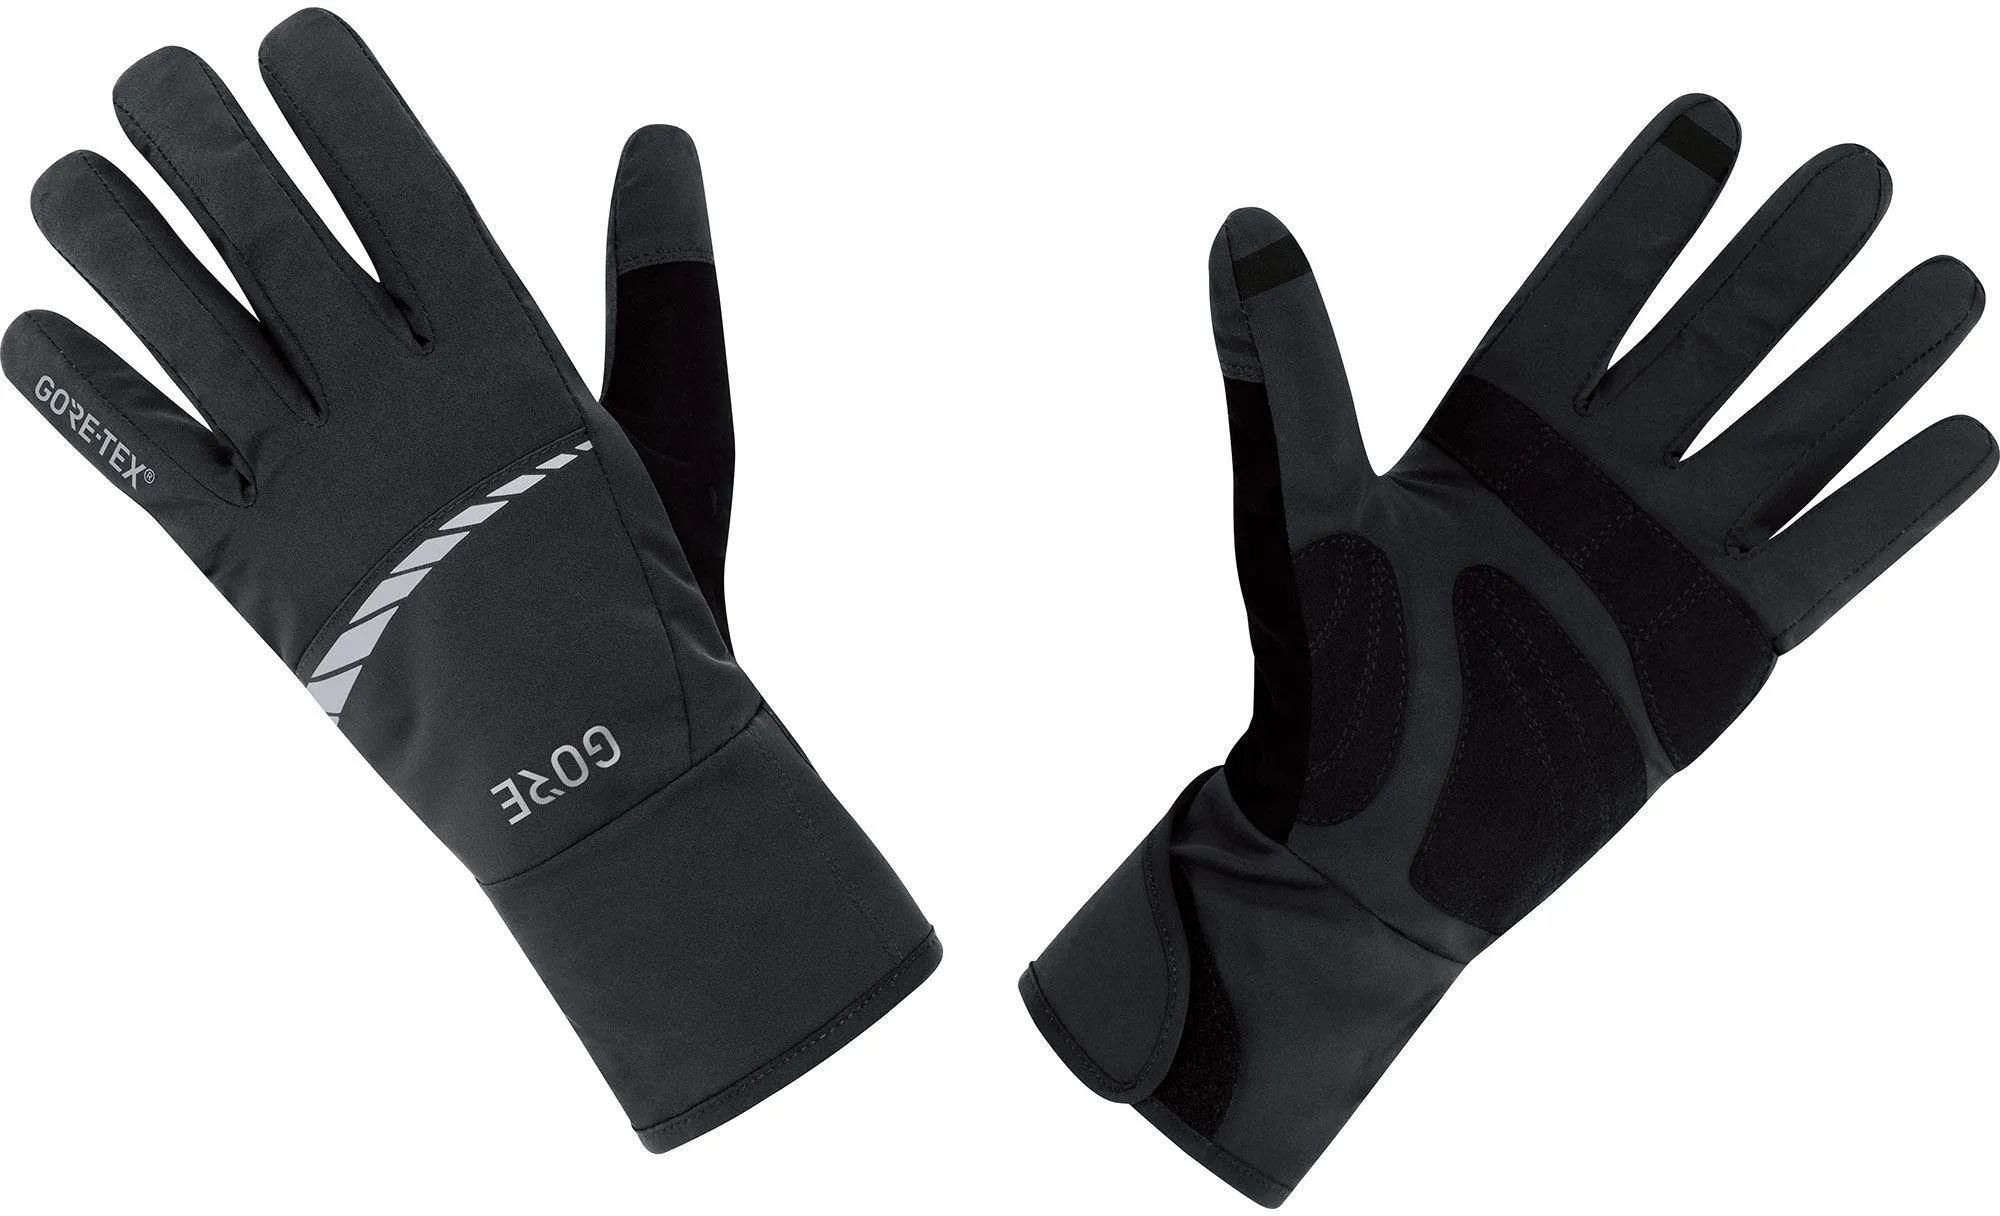  C5 GTX Gloves, Black